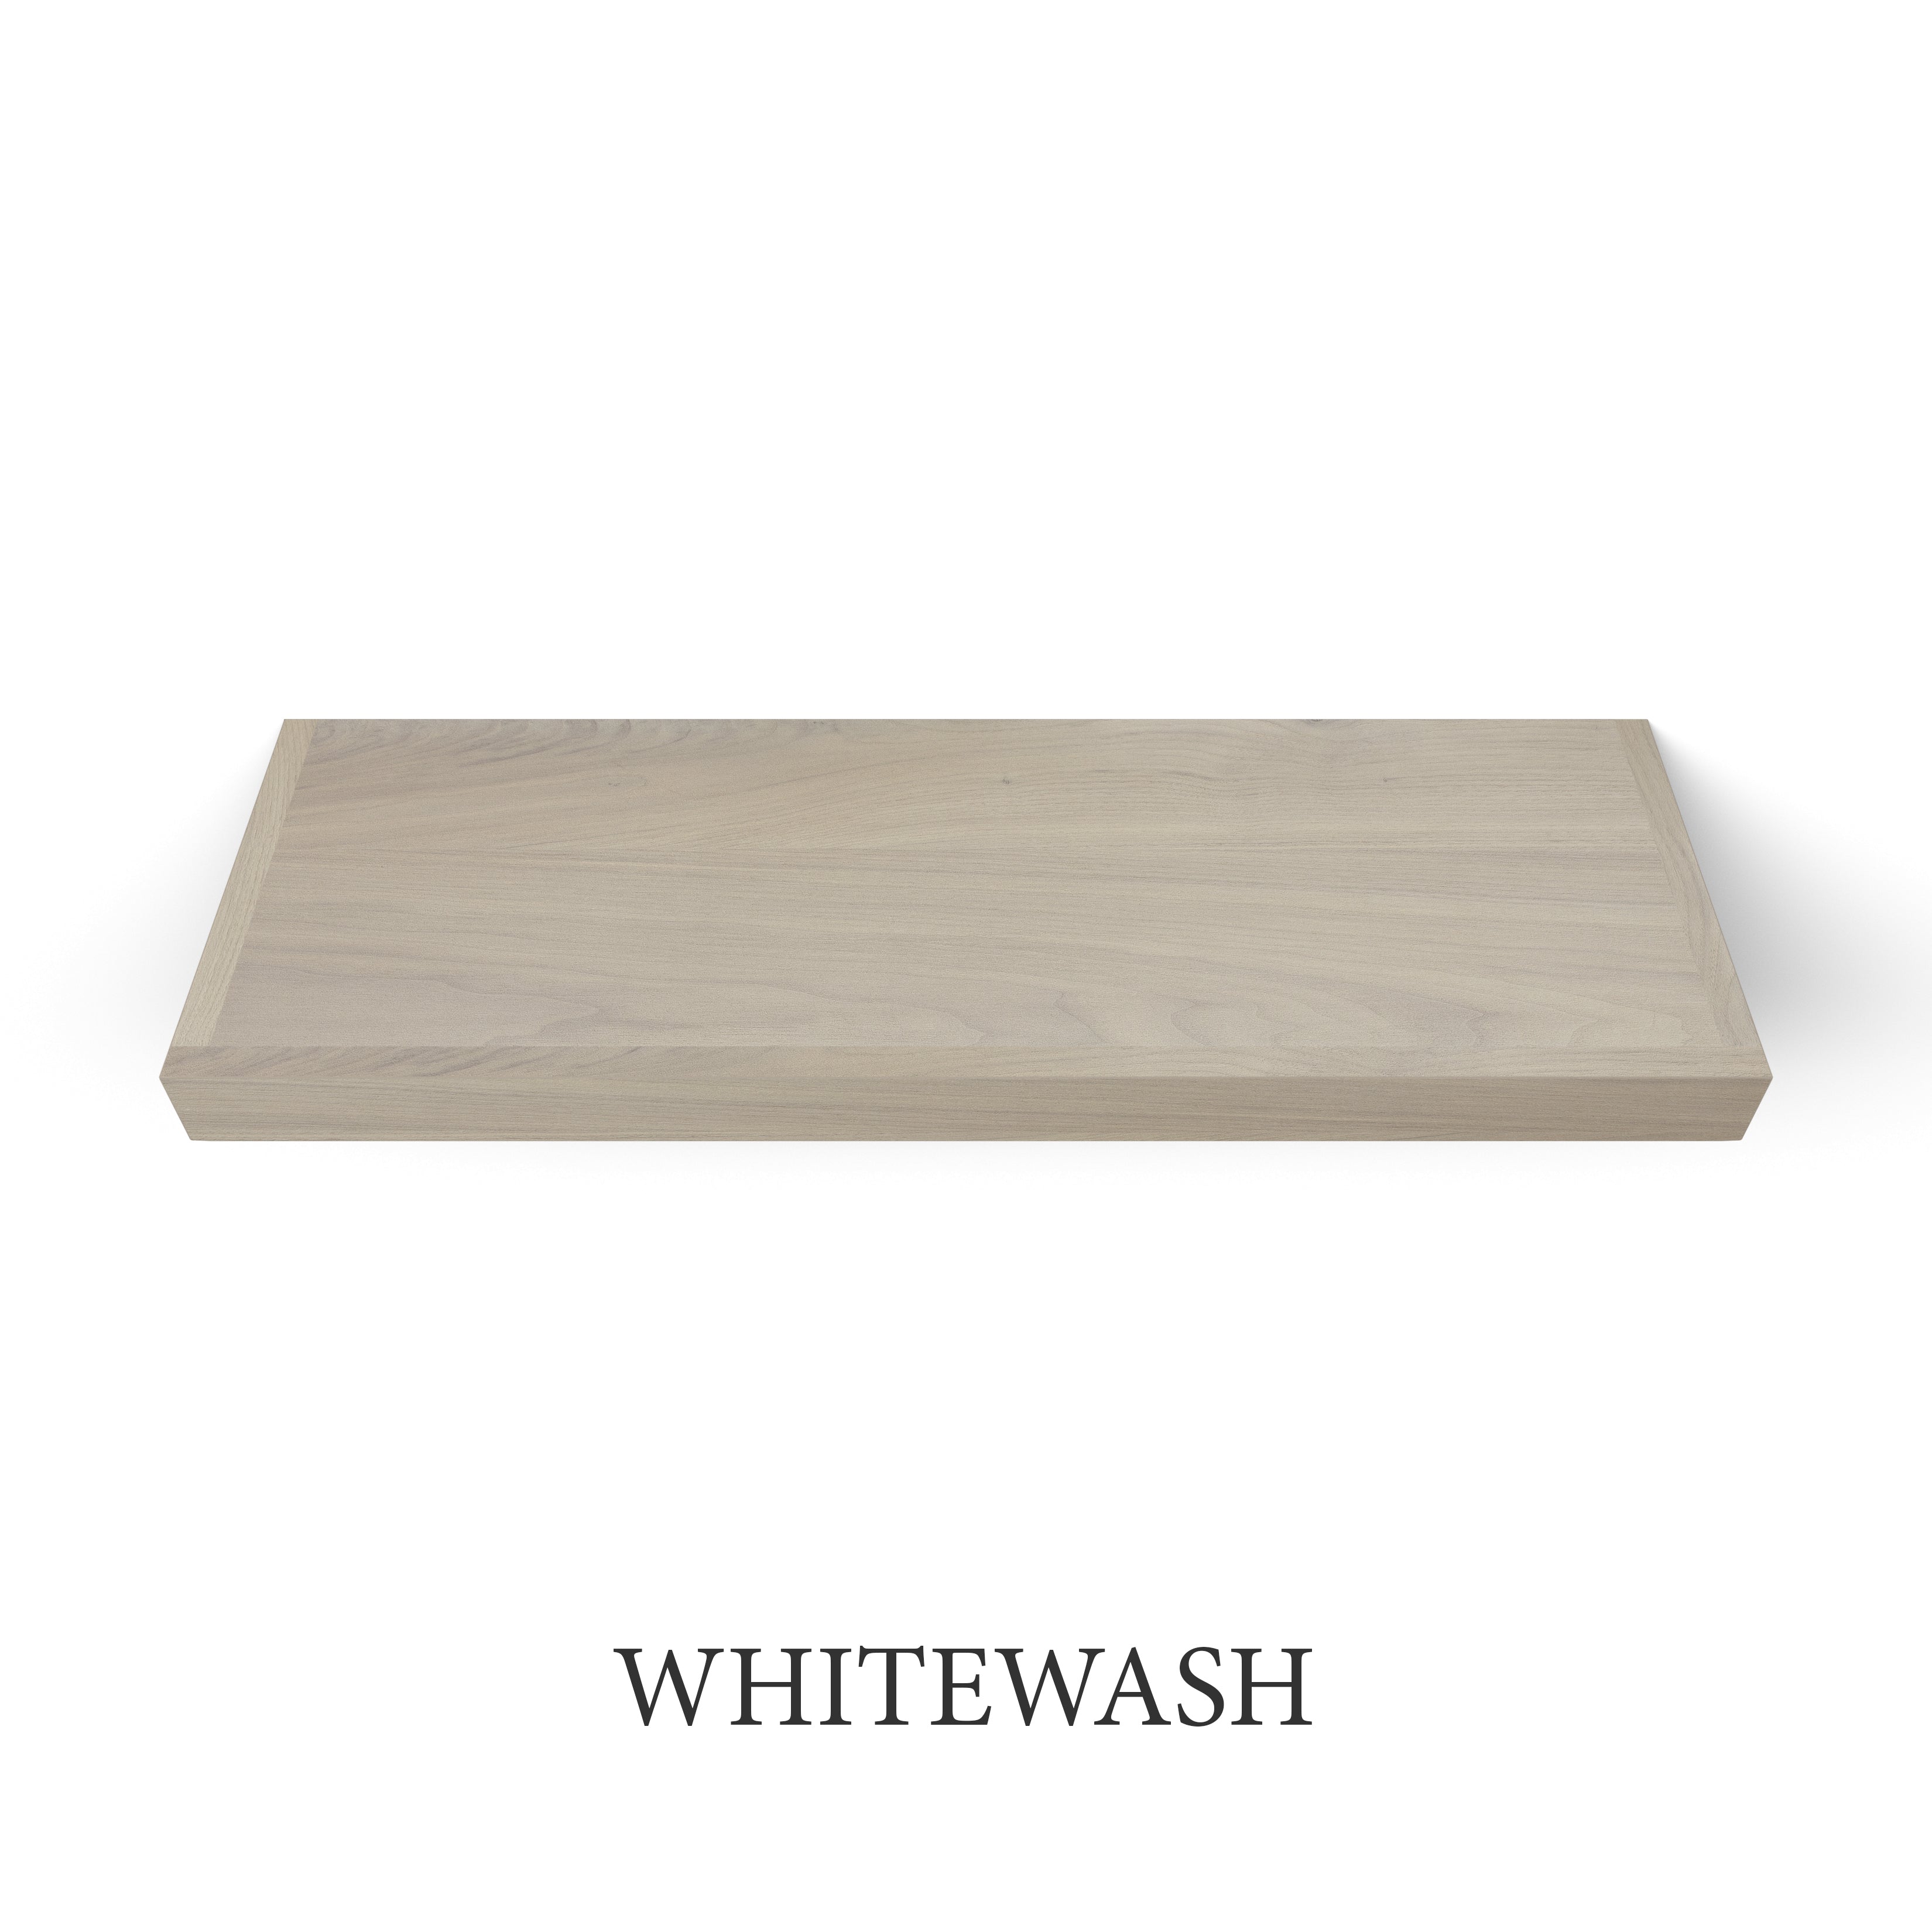 whitewash Walnut 2 Inch Thick LED Lighted Floating Shelf - Hardwired